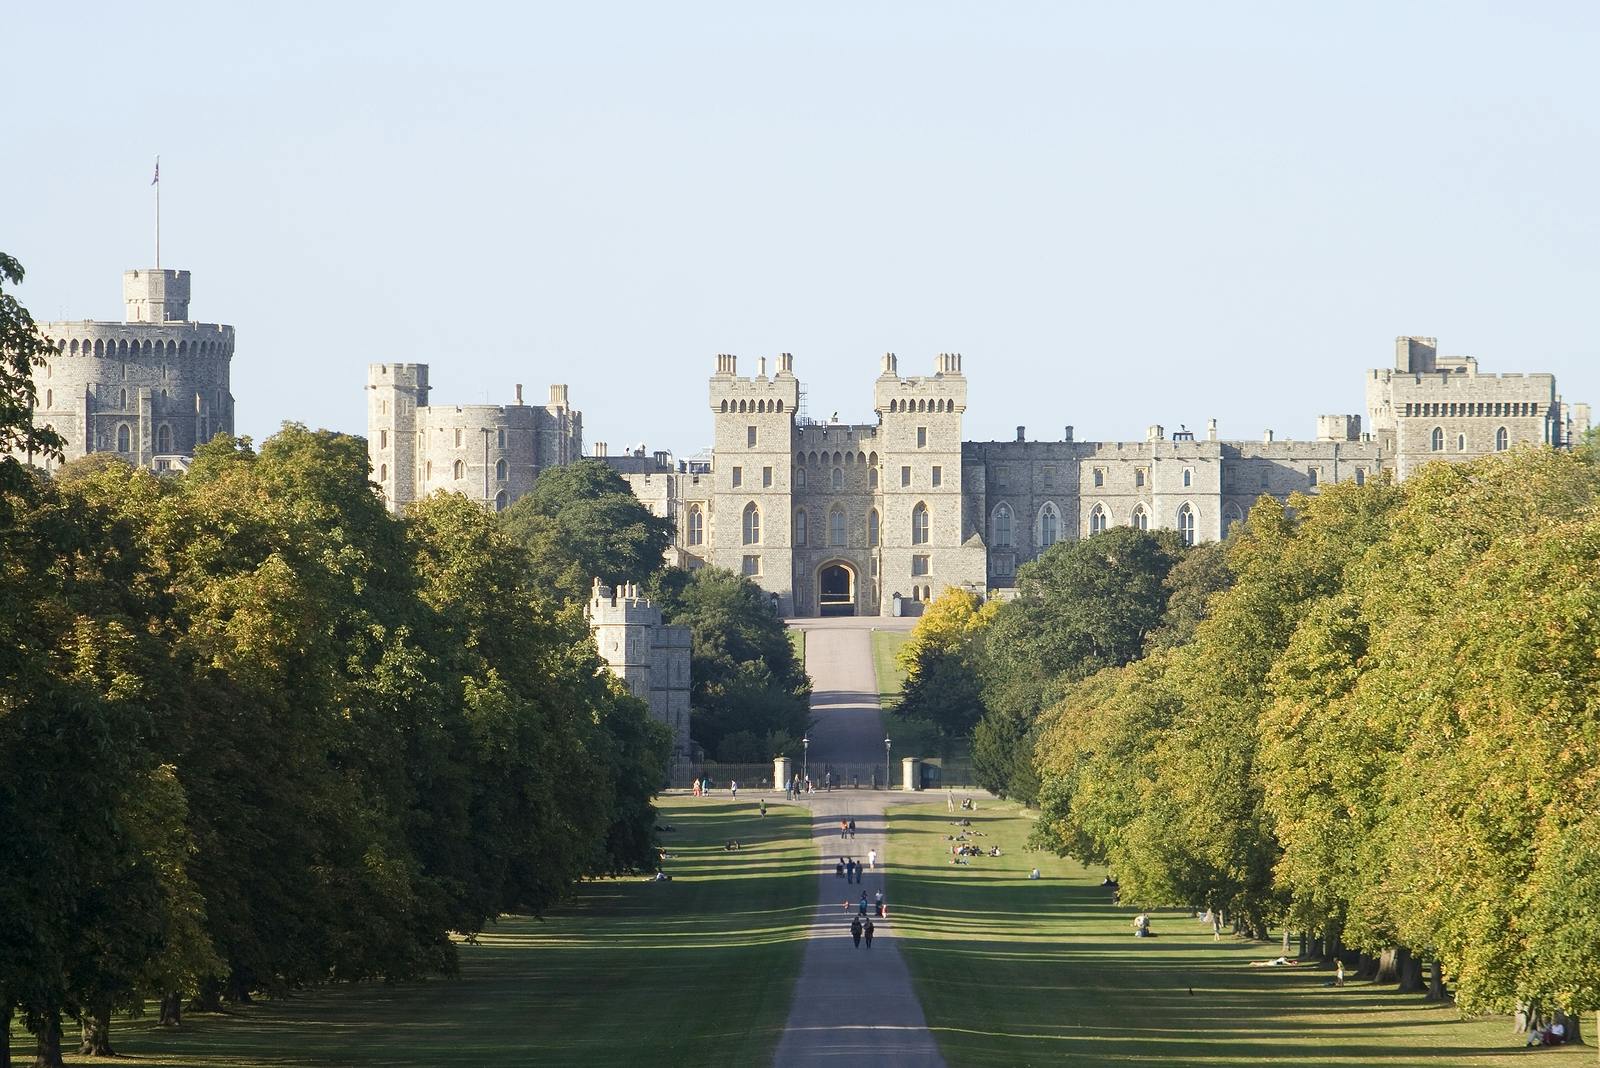 Zamek w Windsorze, Stonehenge, Bath i XIV-wieczny obiad w Lacock